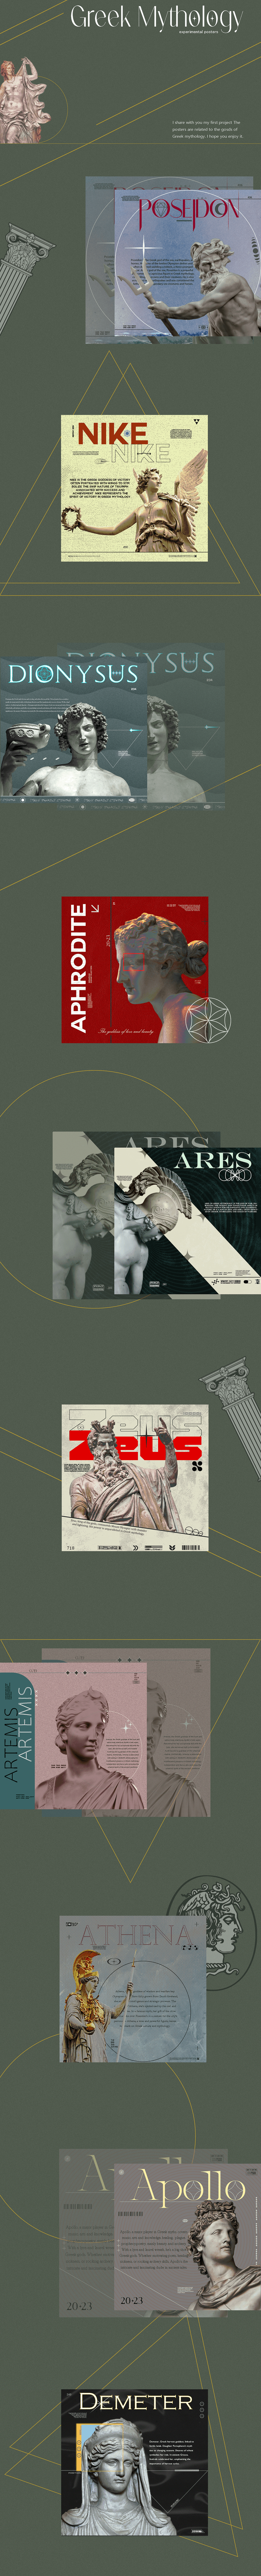 Poster Design experimental collage poster greek mythology